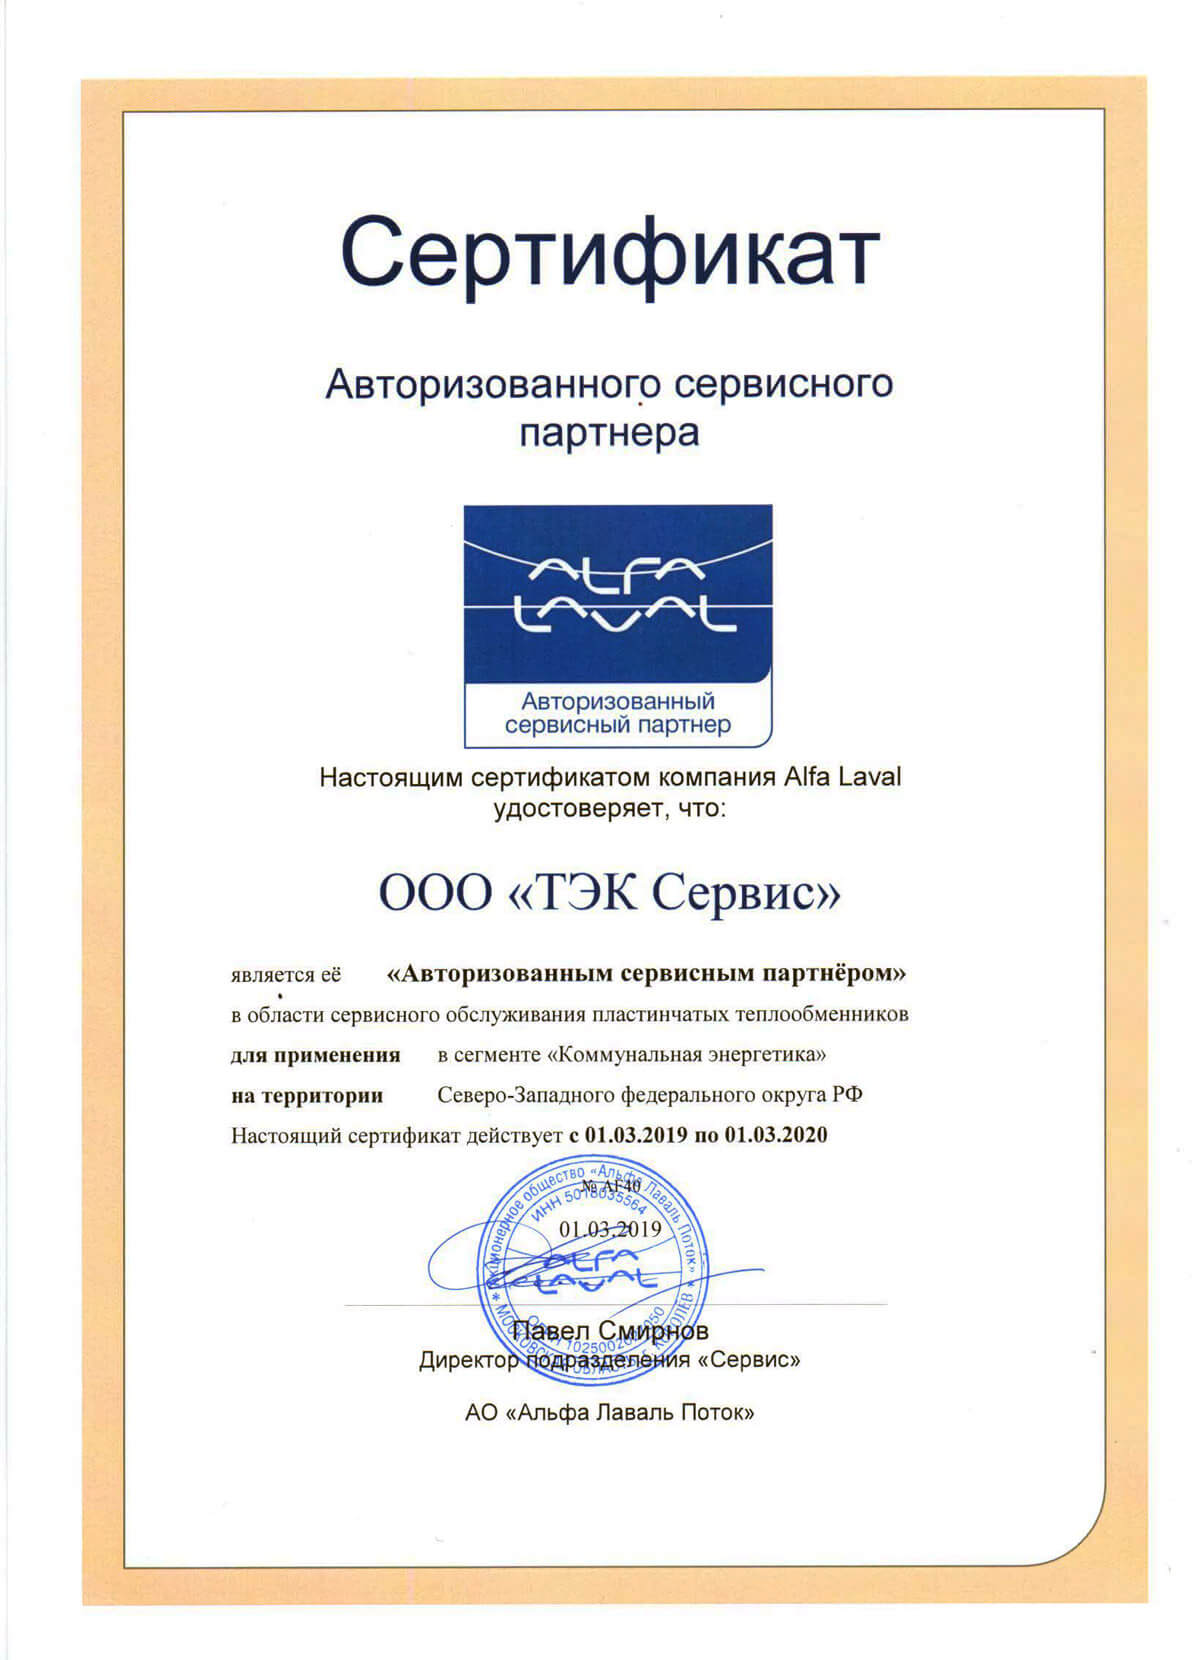 Сертификат партнера фирмы Альфа-Лаваль